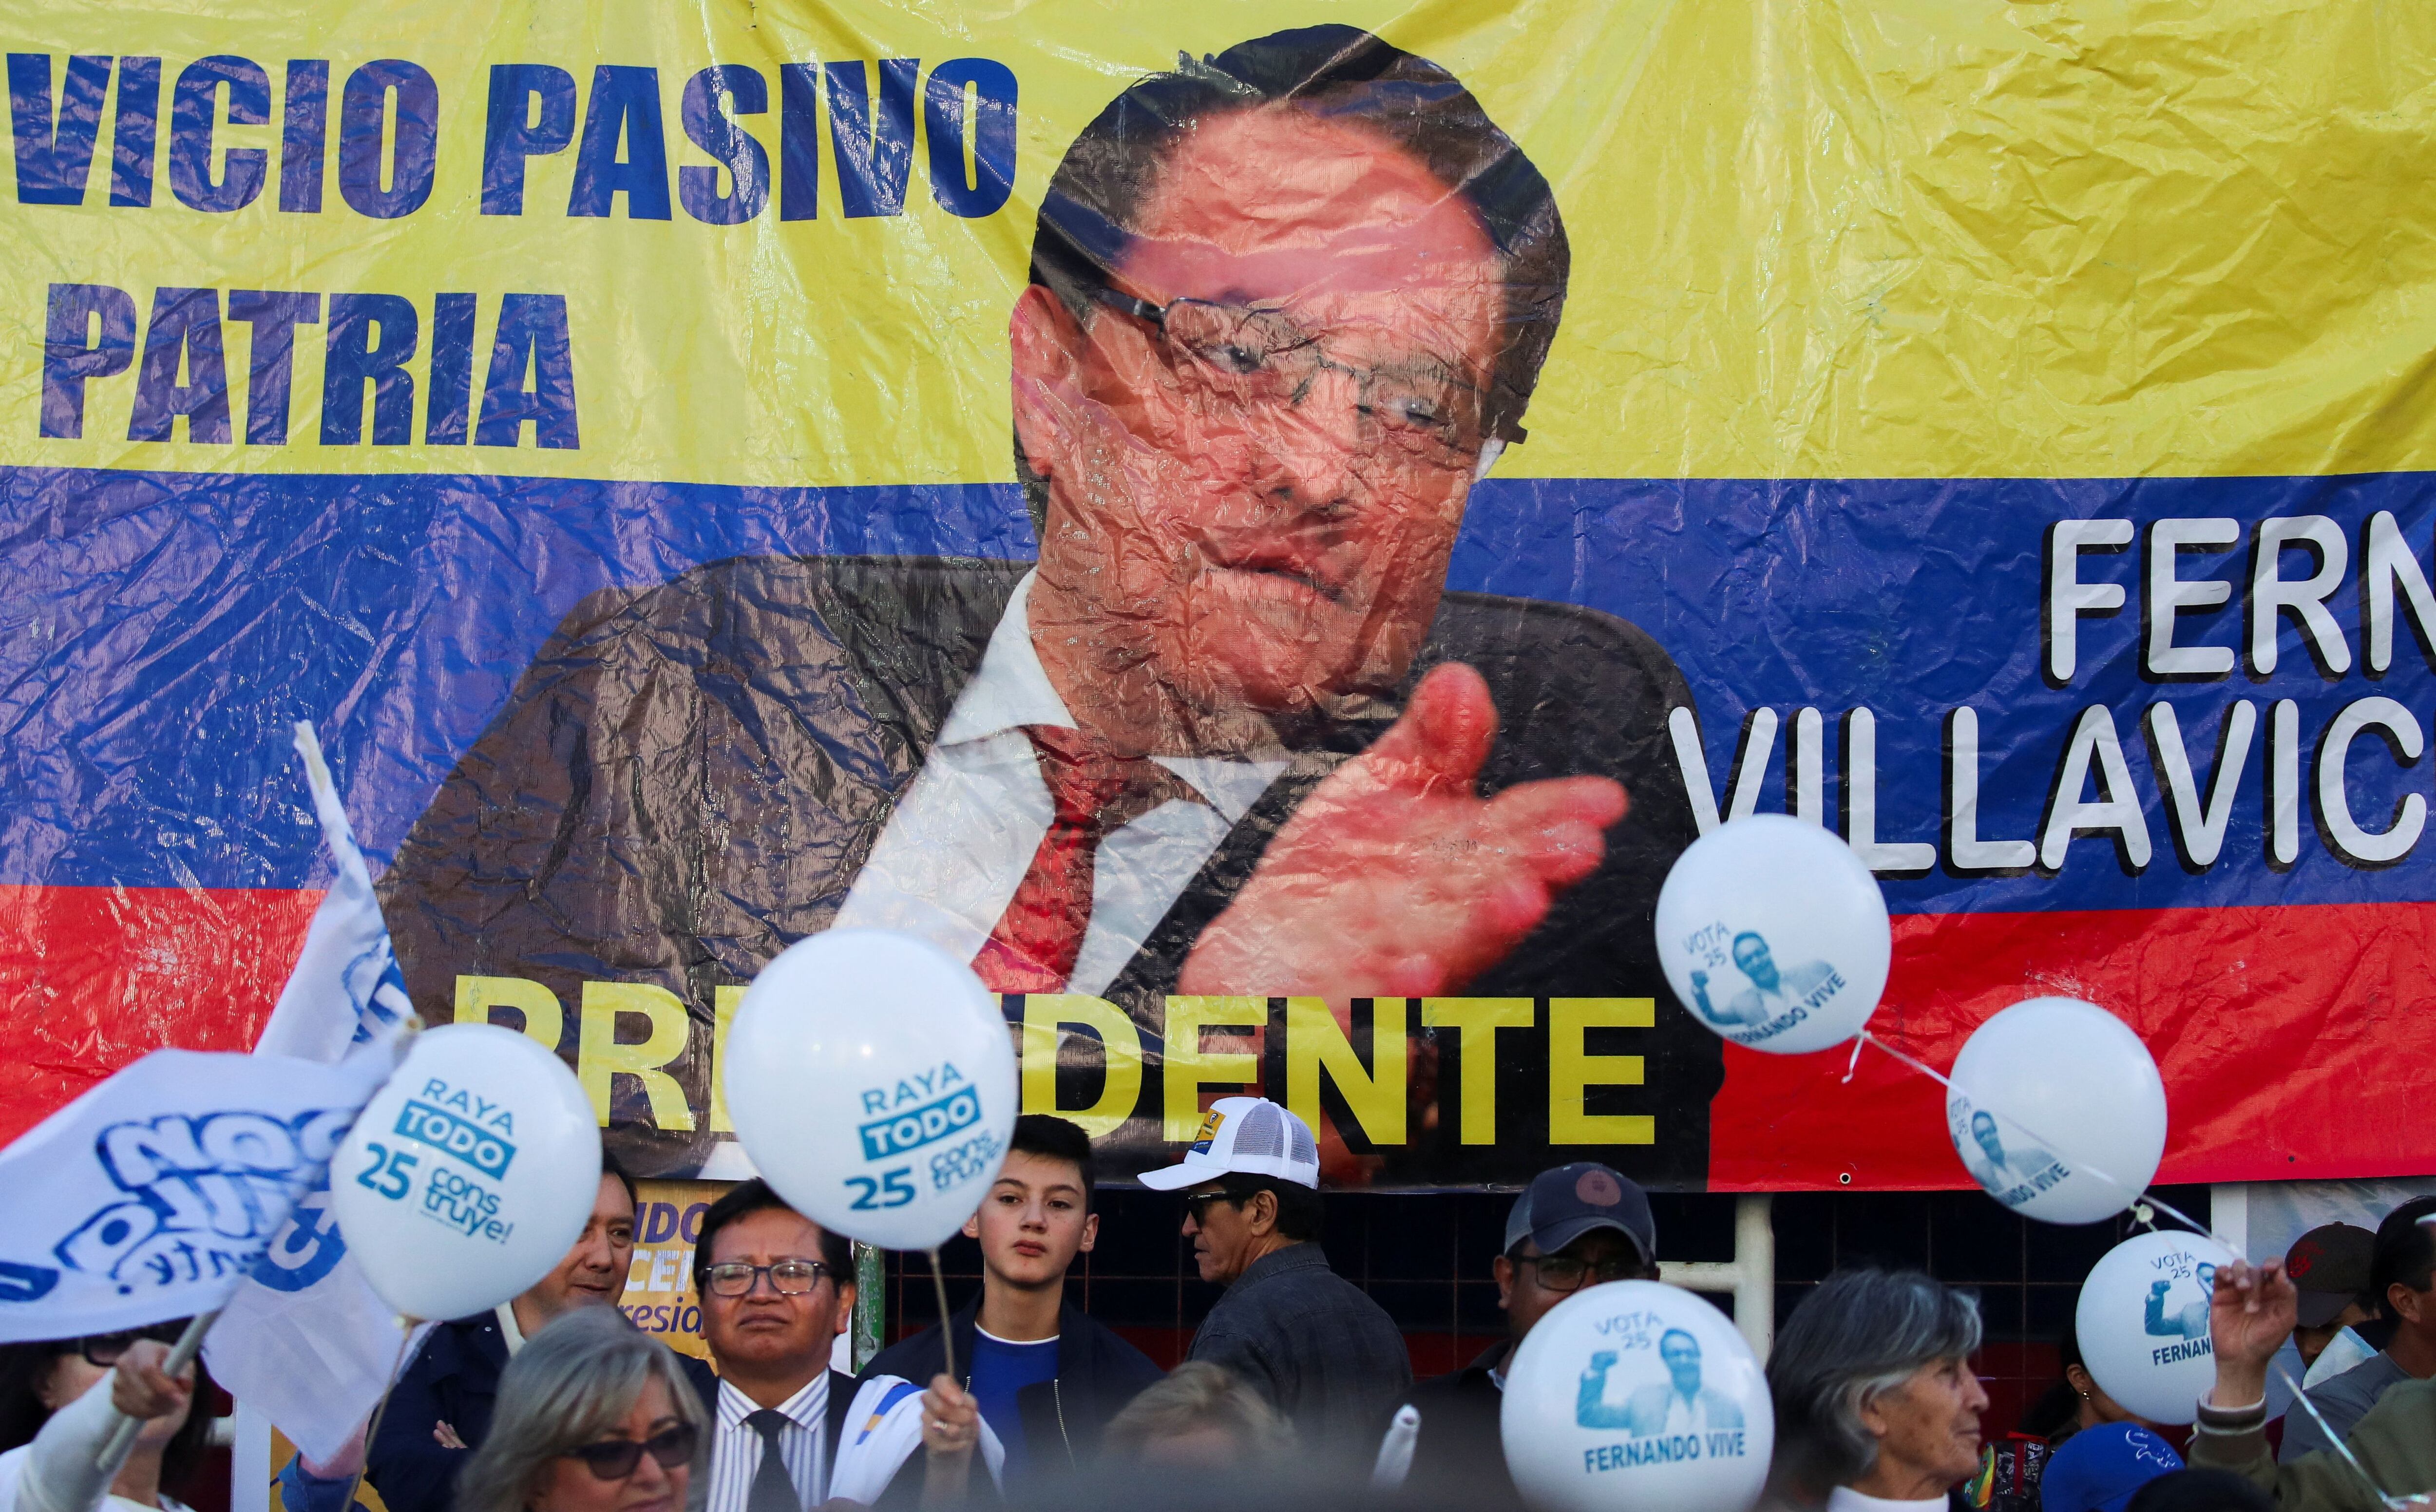 Un grupo de personas posa delante de una pancarta con la foto del candidato presidencial asesinado Fernando Villavicencio el día del mitin de cierre de campaña del candidato presidencial ecuatoriano Christian Zurita (REUTERS/Henry Romero)